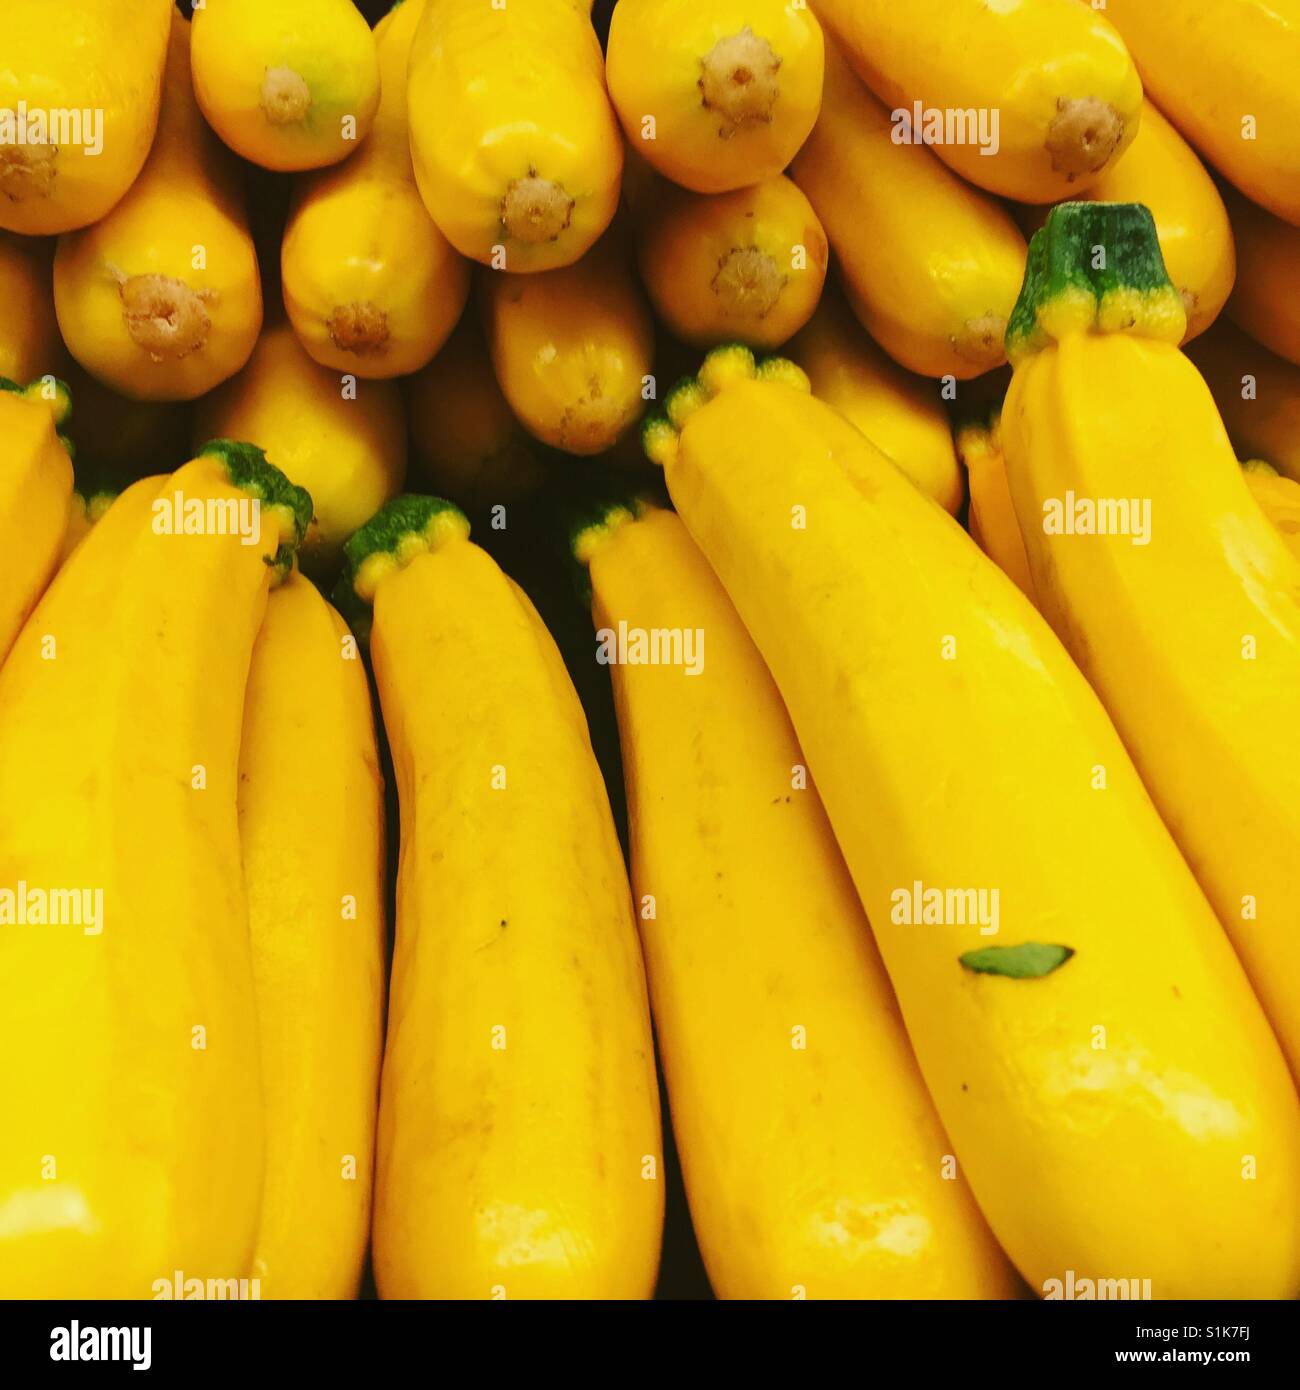 Fresh yellow zucchini by K.R. Stock Photo